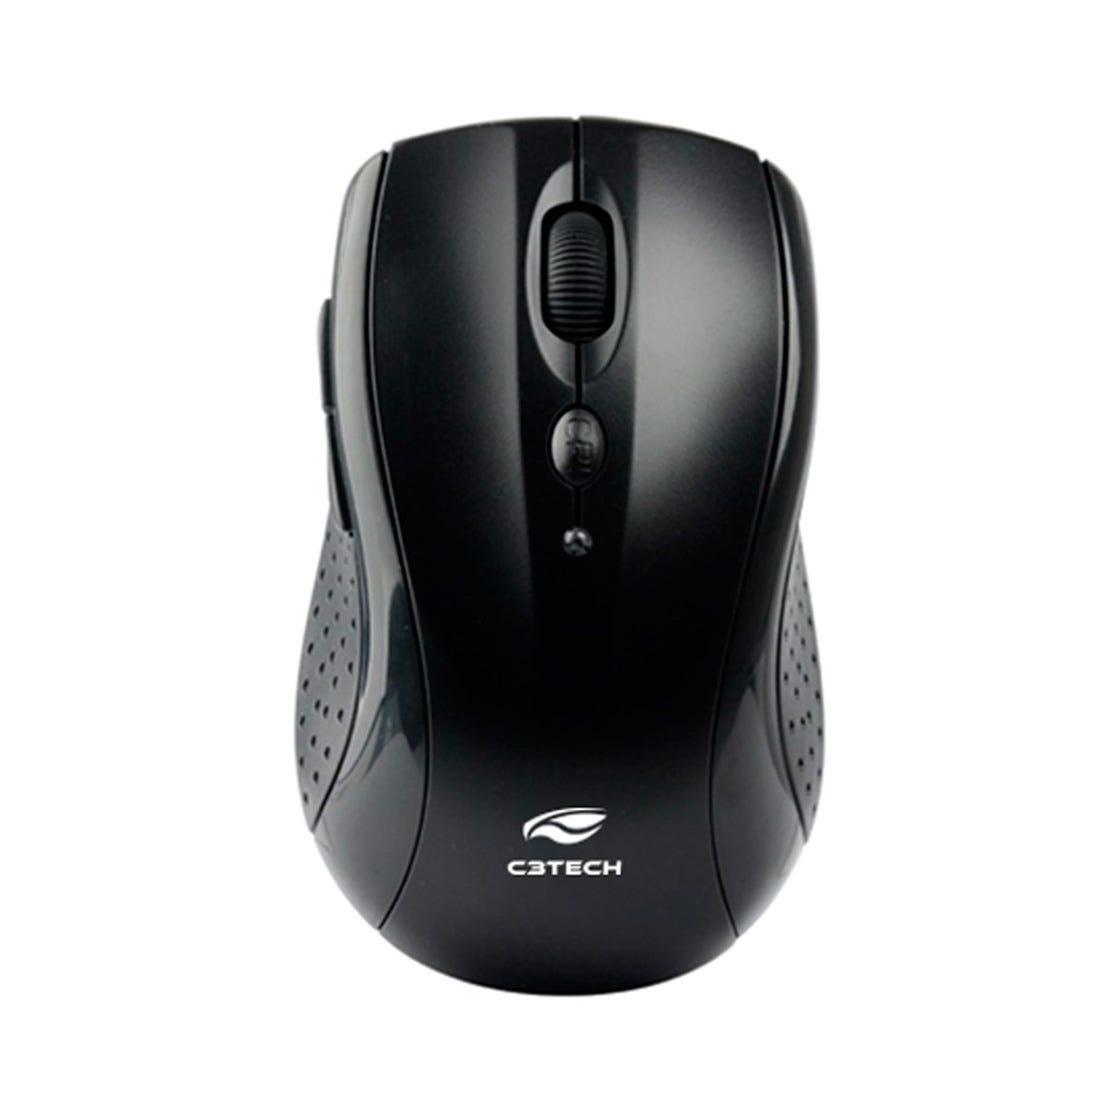 Mouse C3 Tech V2 sem Fio Rc/Nano M-W012BKV2 - Mega Market